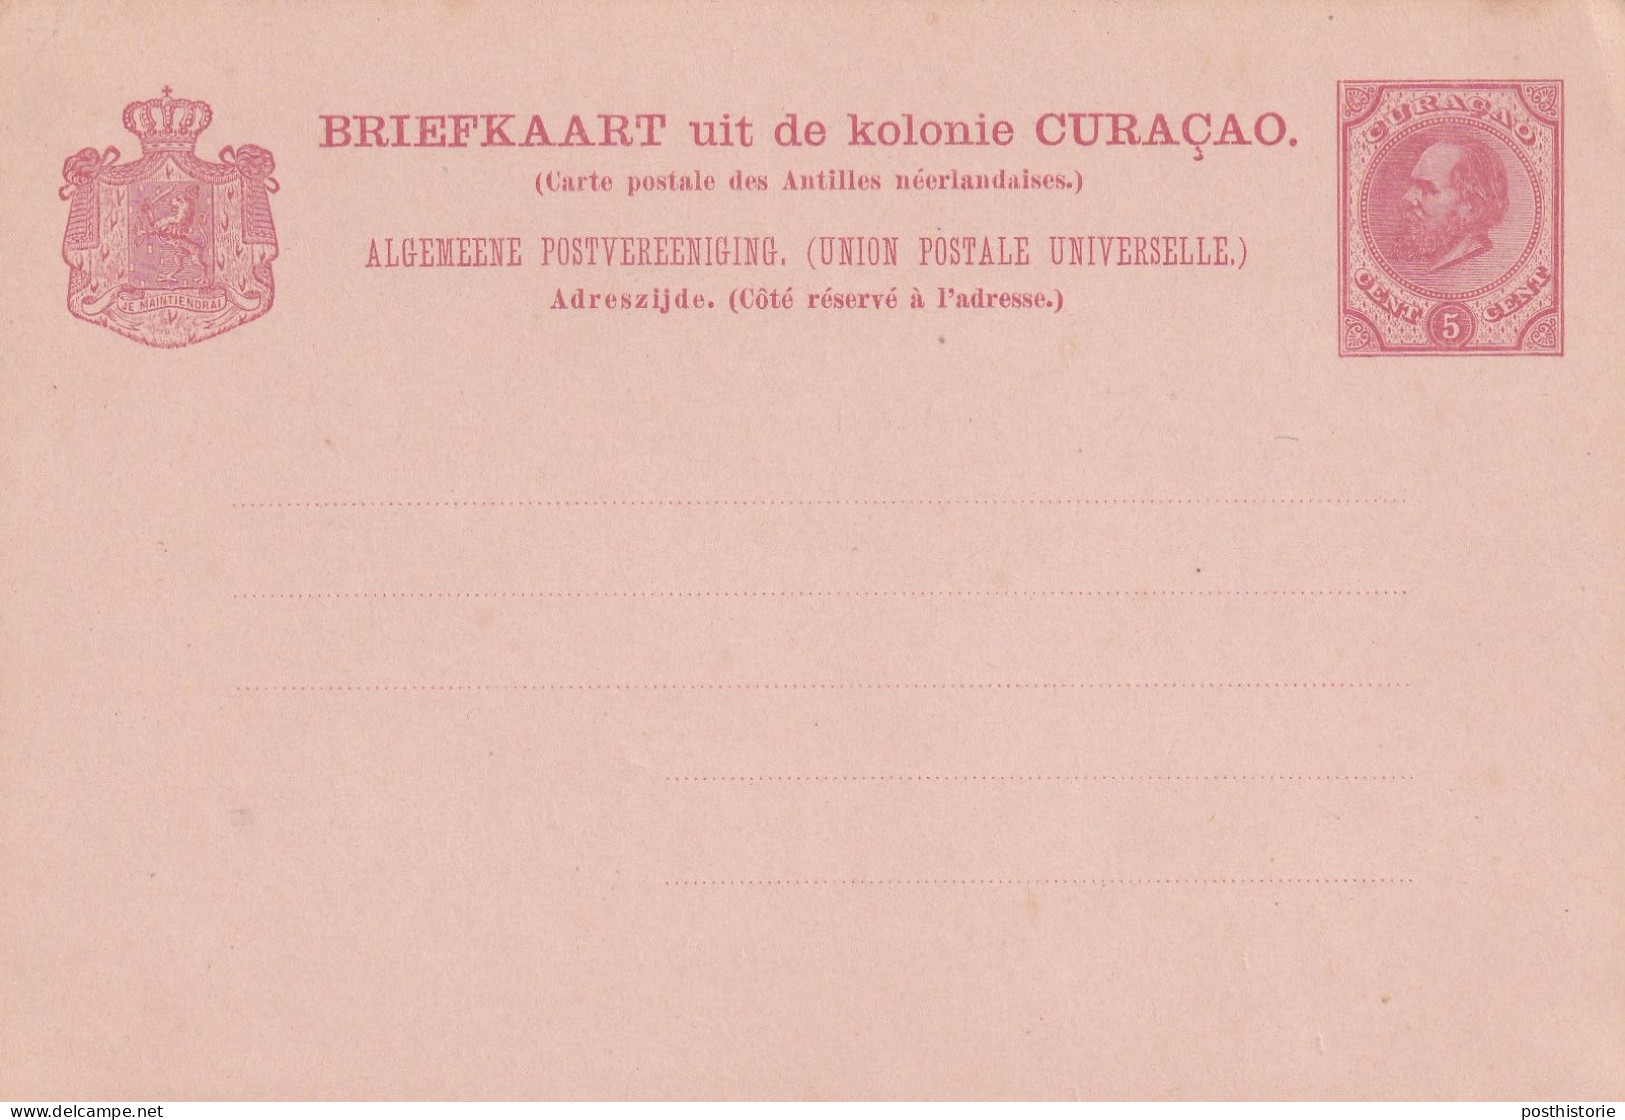 5 Verschillende Ongebruikte Briefkaarten Curacao - Material Postal